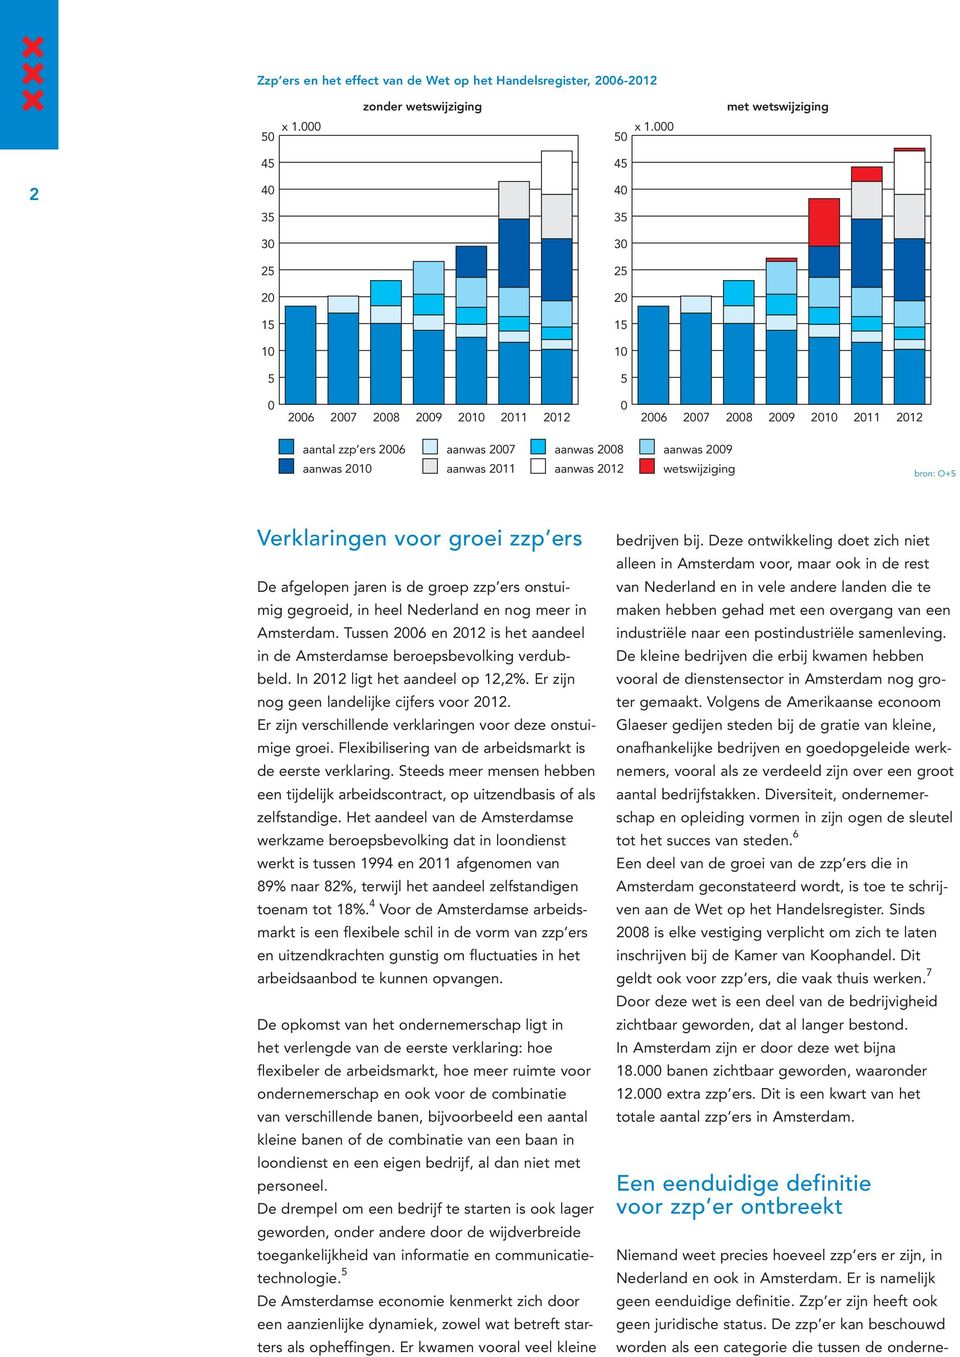 groei zzp ers De afgelopen jaren is de groep zzp ers onstuimig gegroeid, in heel Nederland en nog meer in Amsterdam. Tussen 26 en 212 is het aandeel in de Amsterdamse beroepsbevolking verdubbeld.